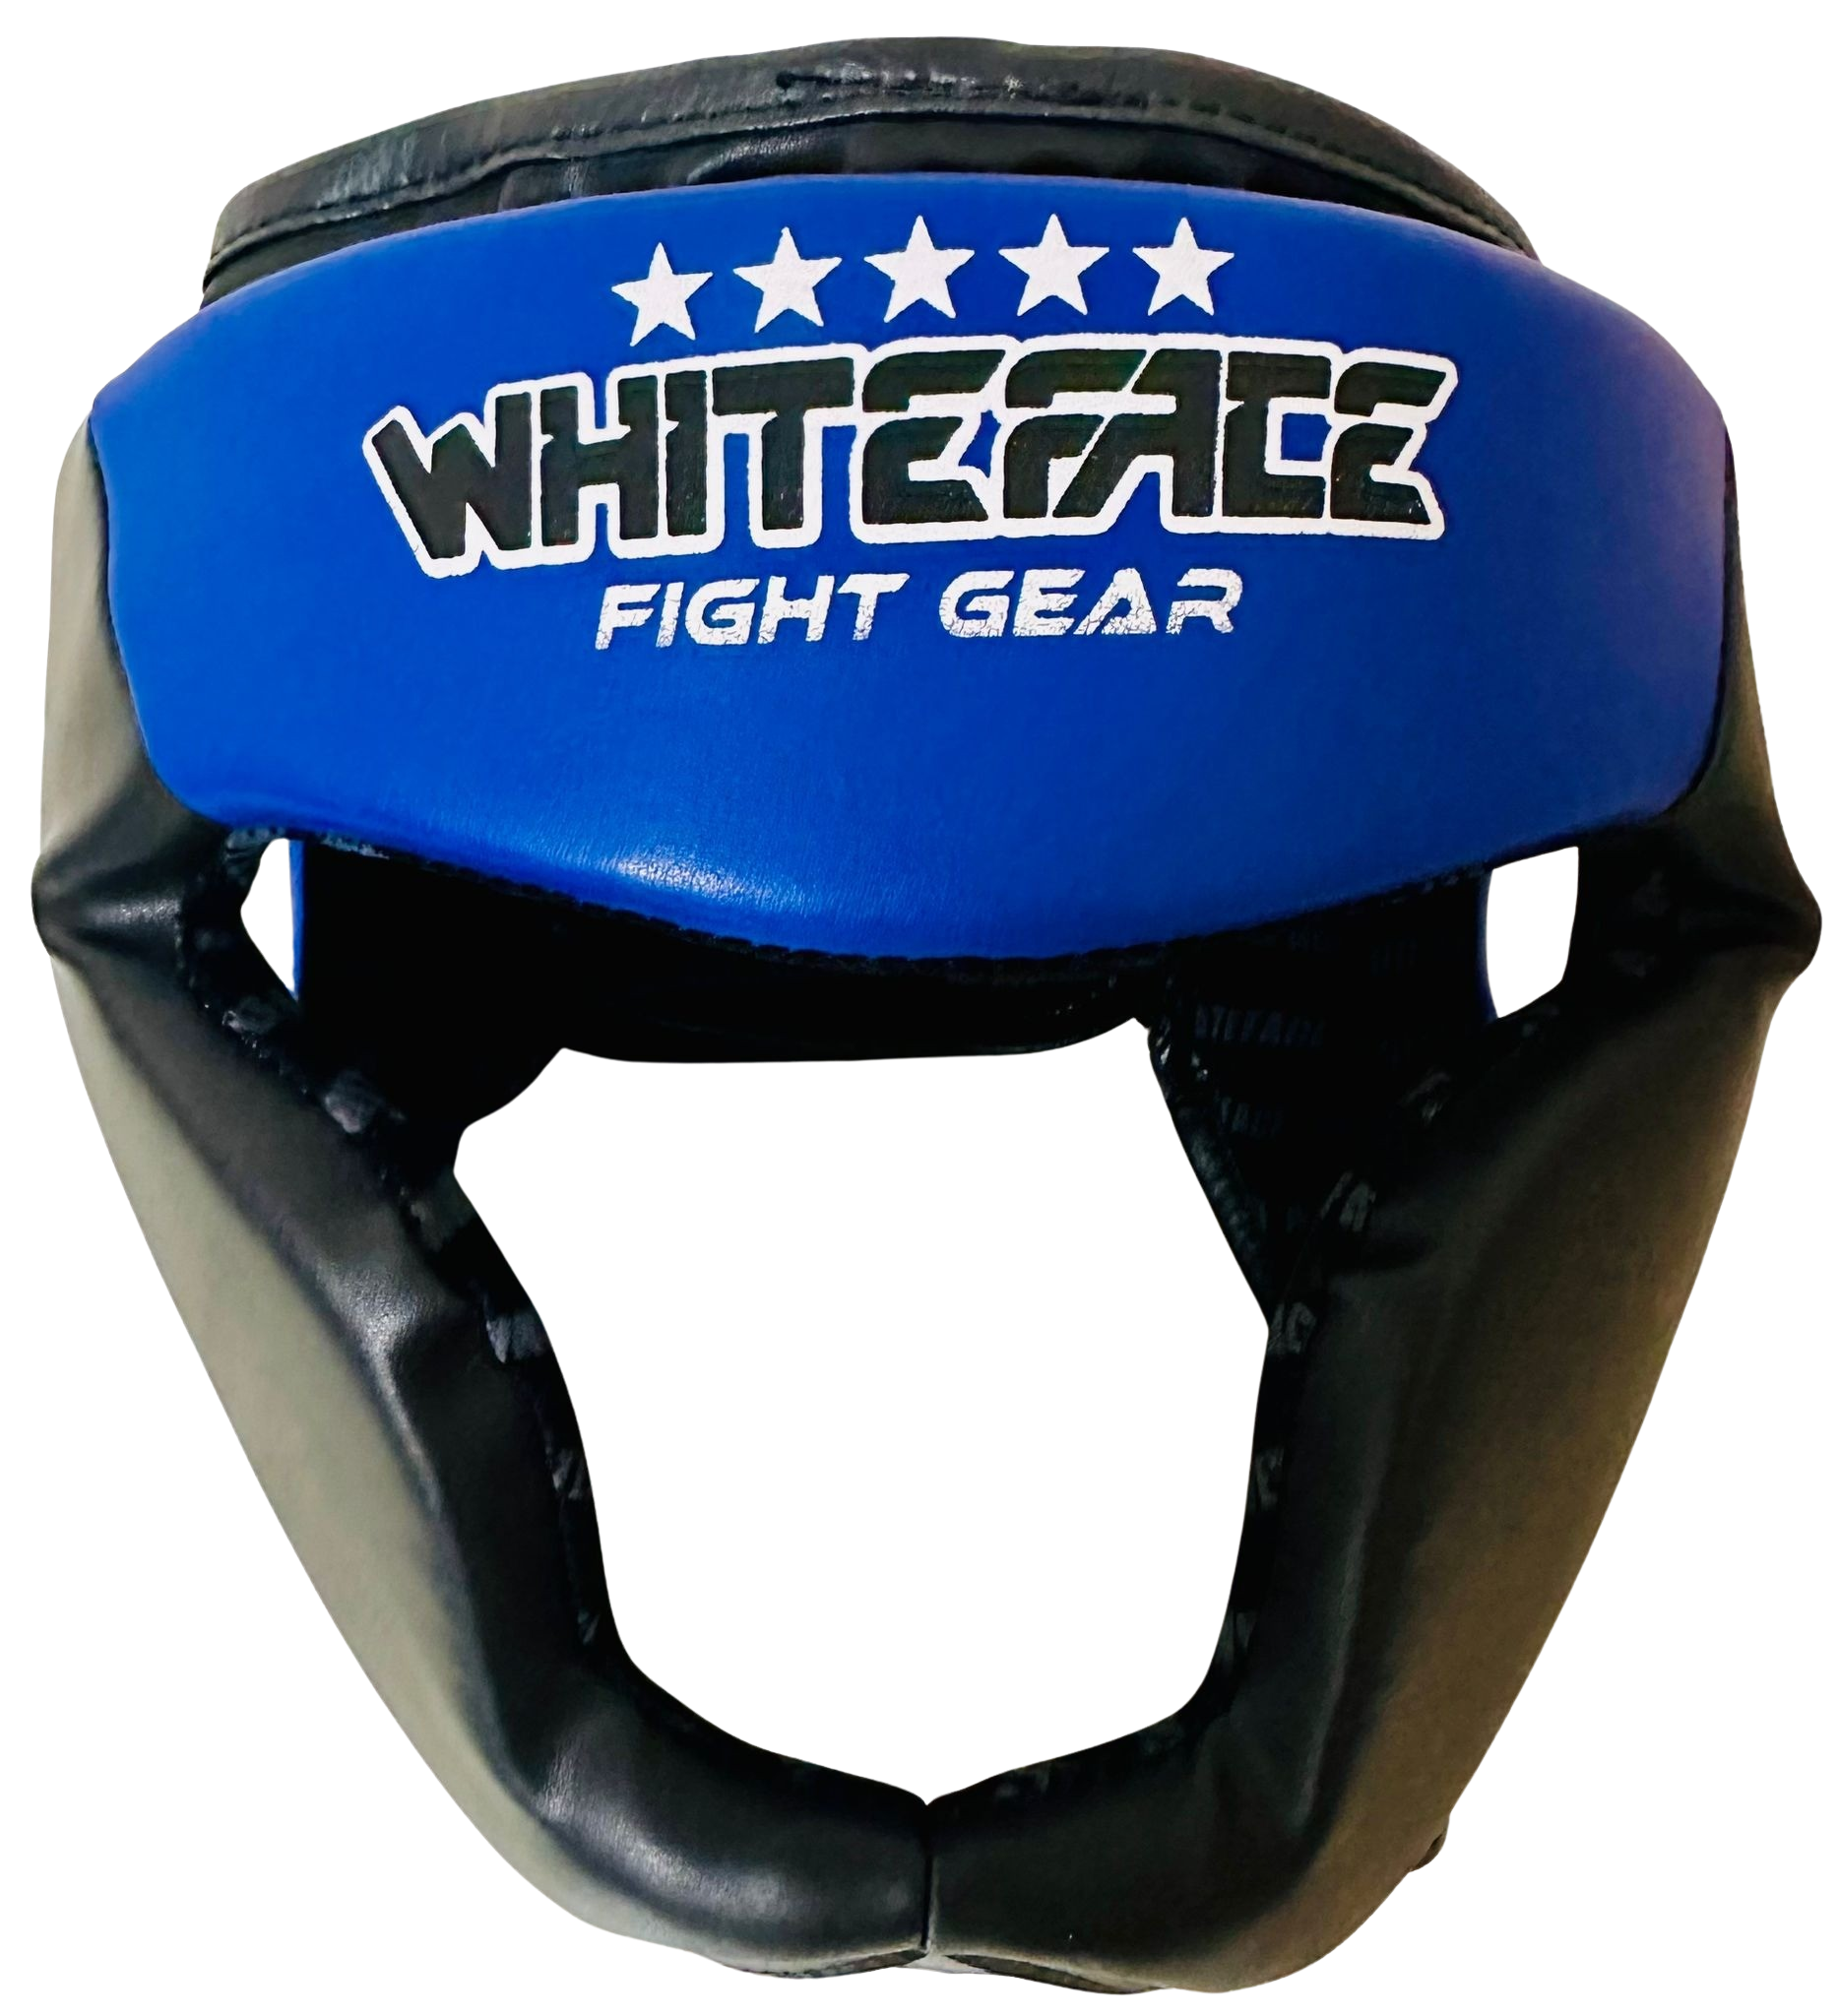 Whiteface Yanak ve Çene Korumalı Boks Kaskı/Muay Thai/Kick Boks Kask (mavi)